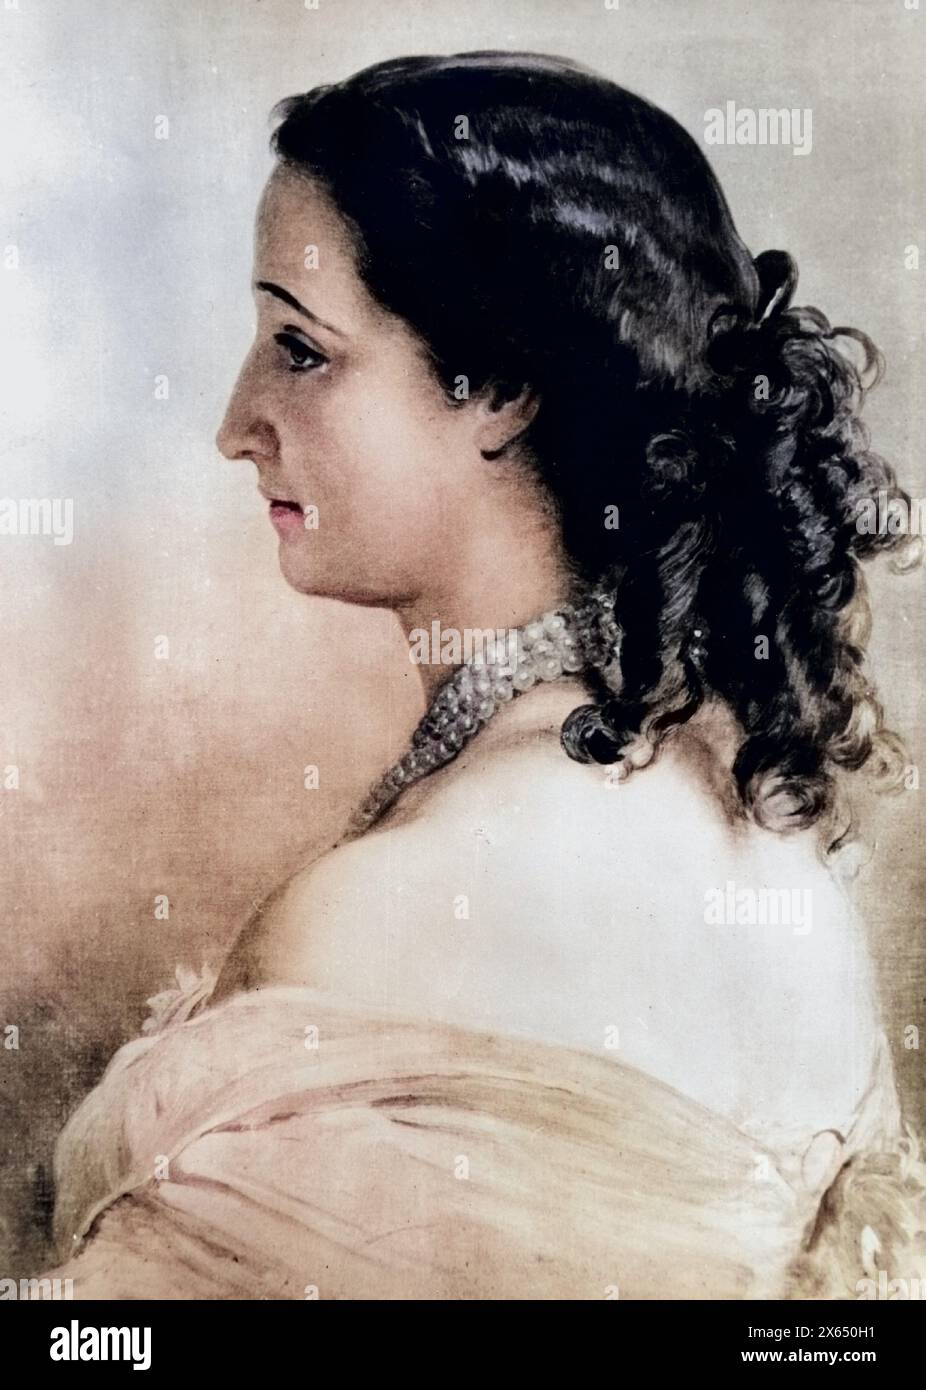 Eugenie, 5,51826 - 11.7,1920, consorte imperatrice di Francia 30.1.1853 - 4,9.1870, ritratto, DIRITTI AGGIUNTIVI-CLEARANCE-INFO-NOT-AVAILABLE Foto Stock